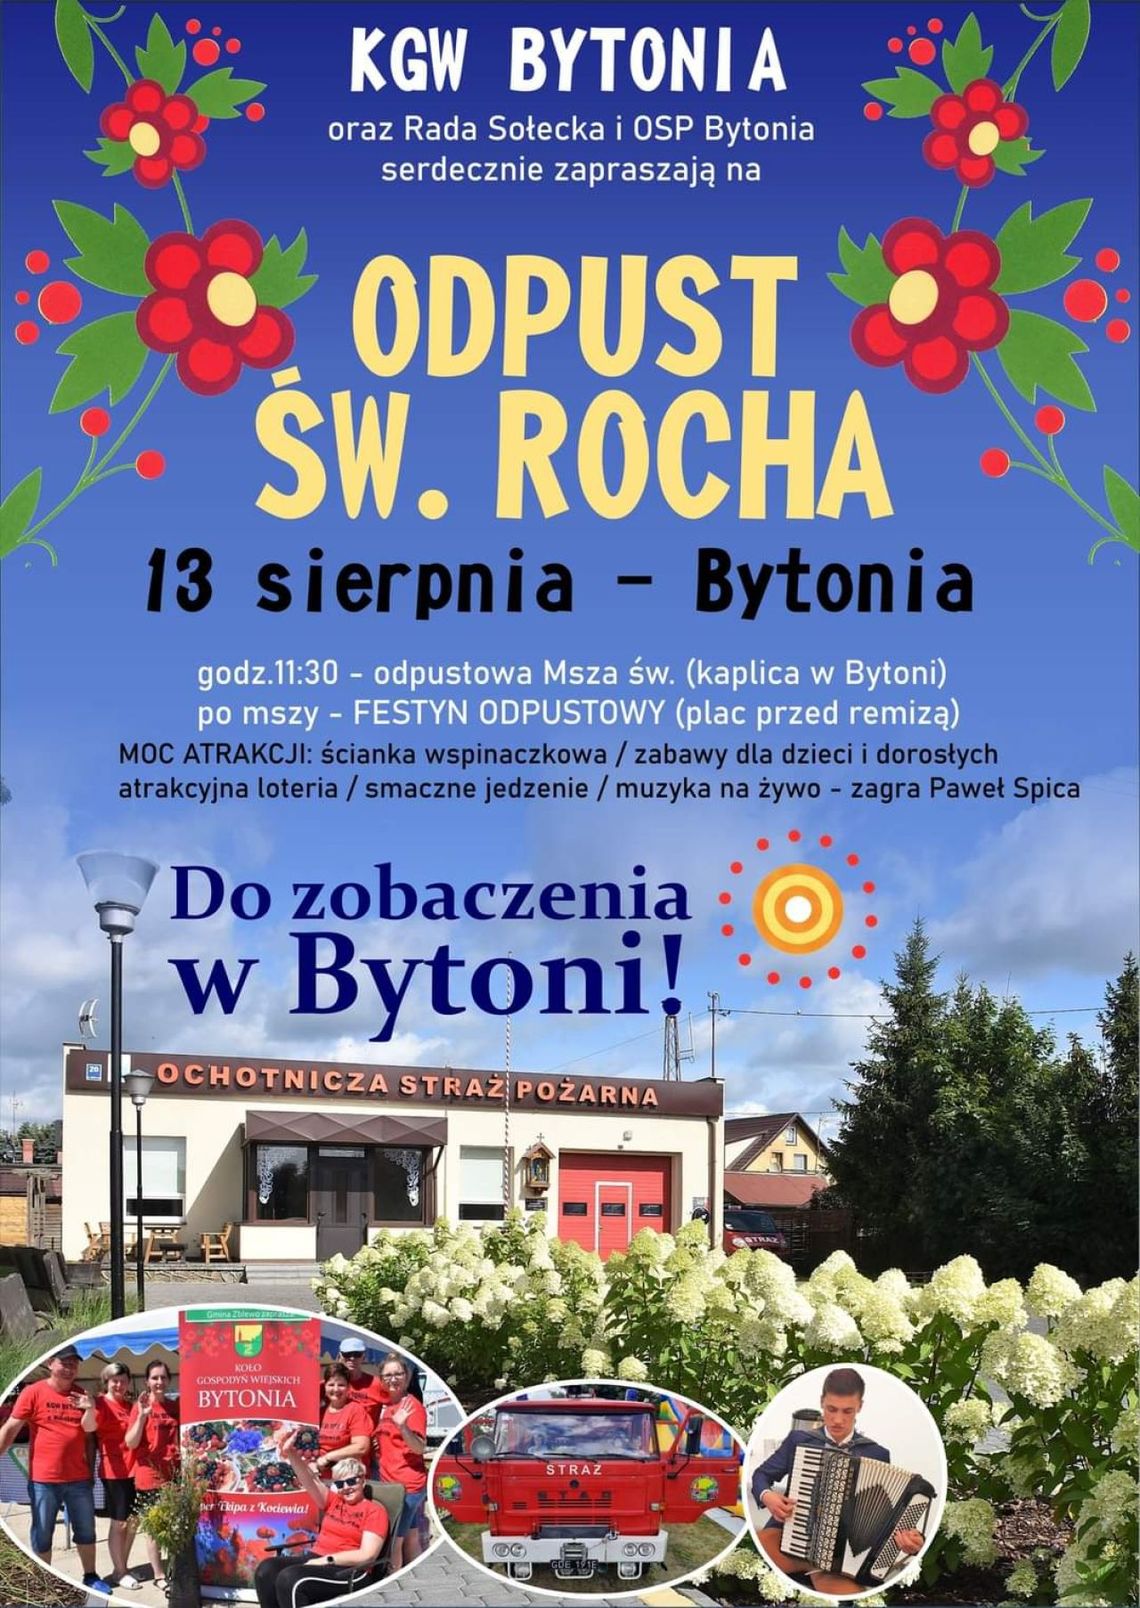 Już w tę niedzielę - moc atrakcji, dobrej zabawy i smaków na odpuście św. Rocha w Bytoni!